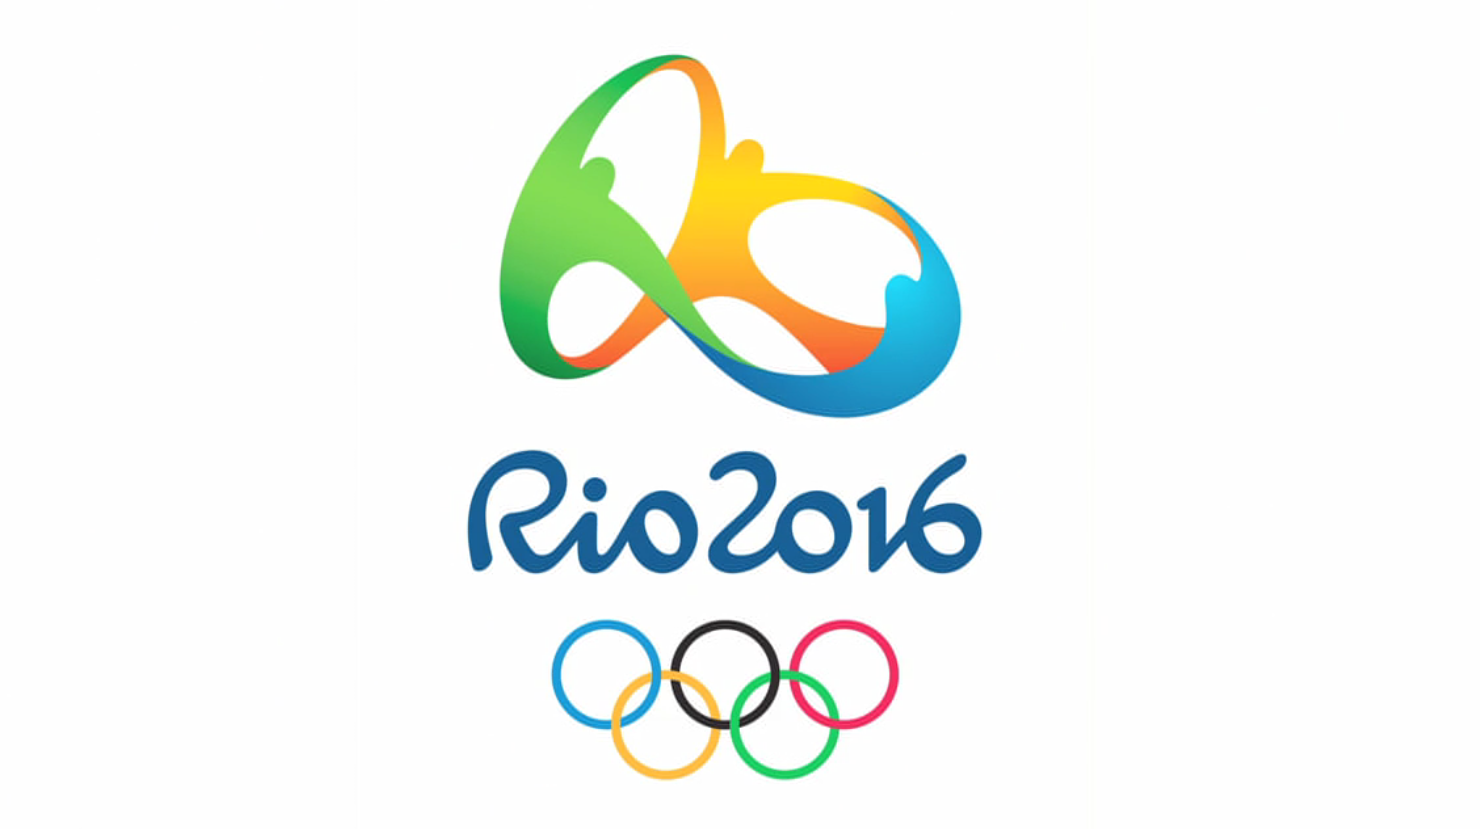 Jogos Olímpicos Rio 2016 são na RTP, Extra